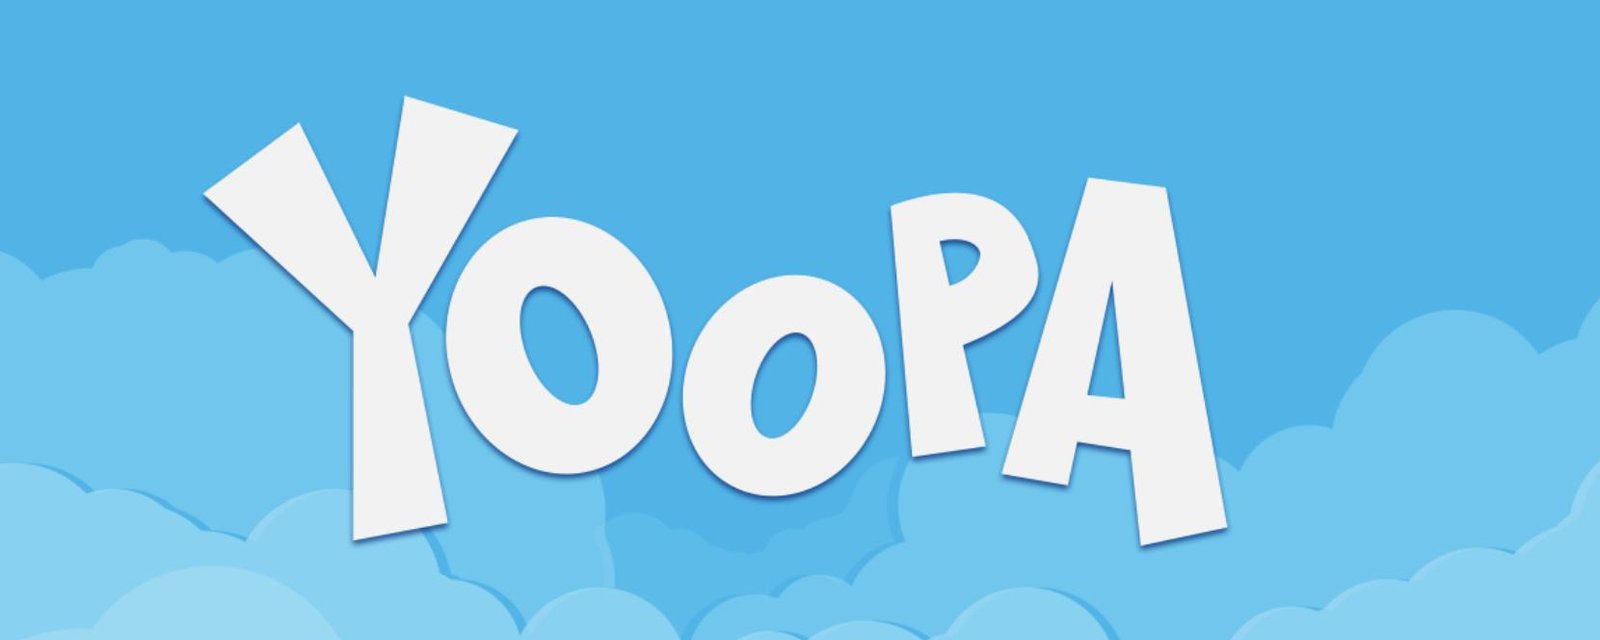 TVA annonce que la chaîne Yoopa sera débrouillée dès aujourd'hui, bonne nouvelle pour parents et enfants